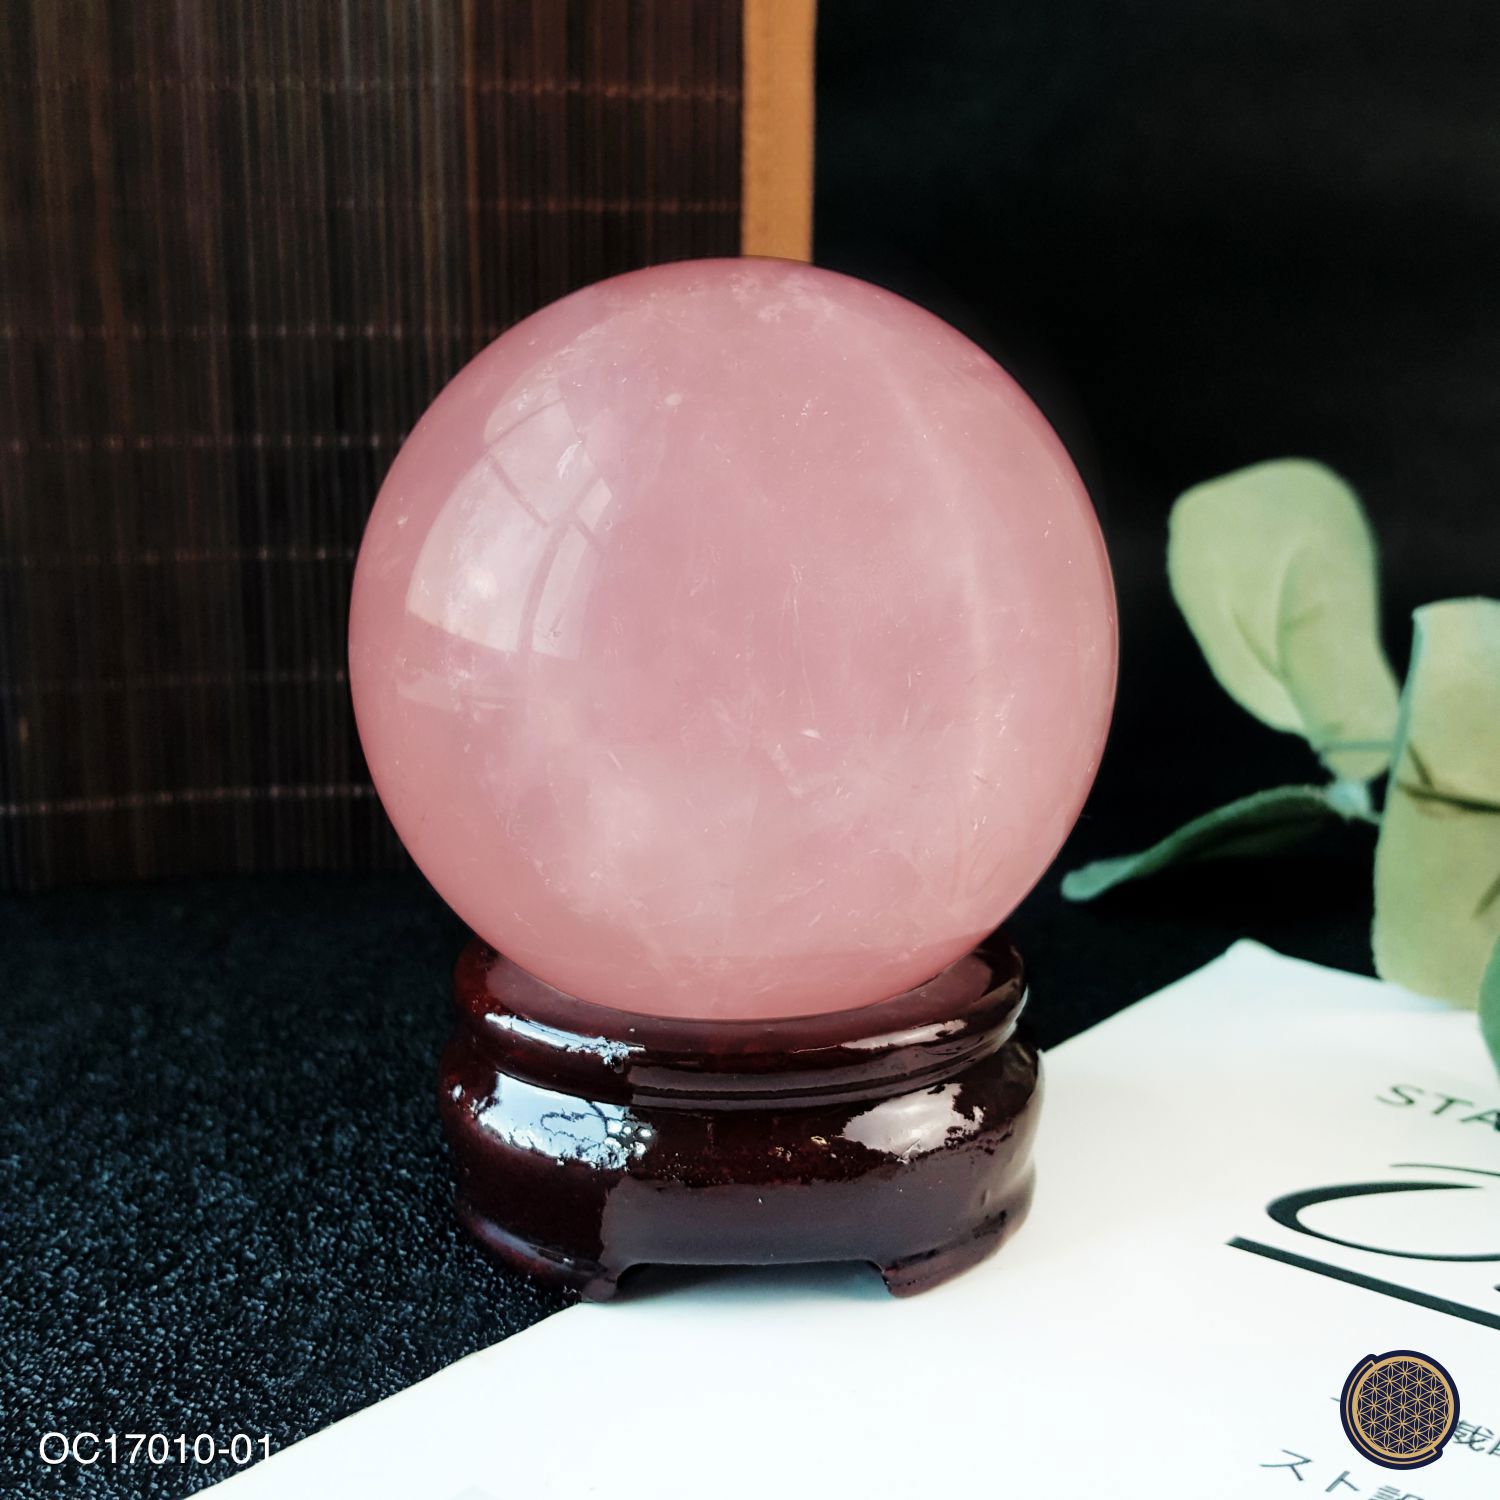 64.5mm Starlight Rose Quartz Ball